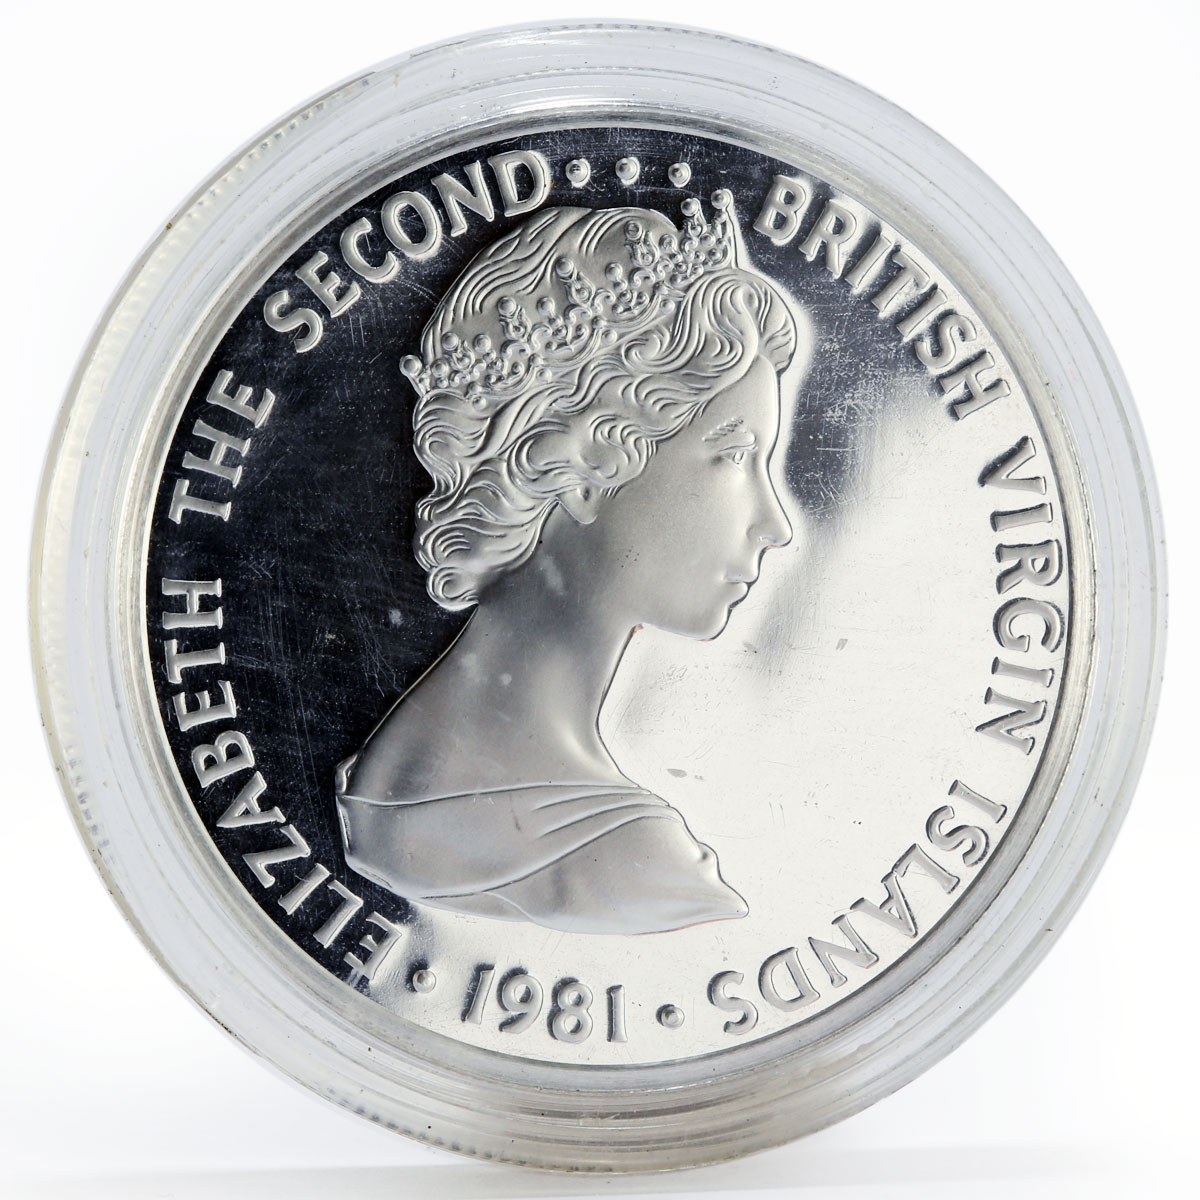 British Virgin Islands 5 dollars Bird Fauna Royal Tern silver coin 1981